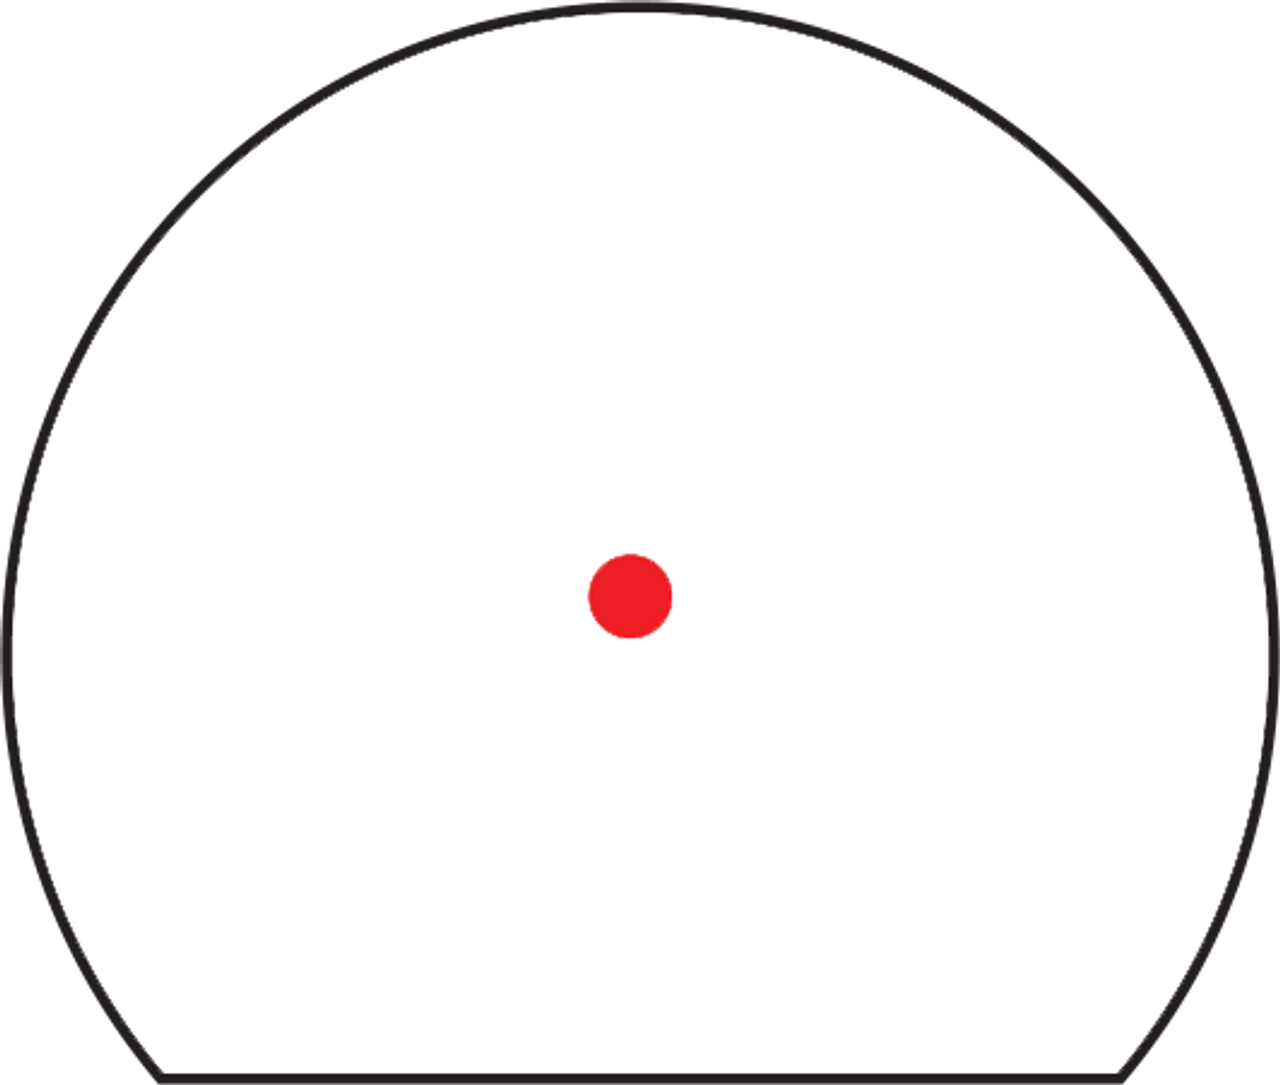 Trijicon SRO 1x Micro Red Dot Sight - 5 MOA